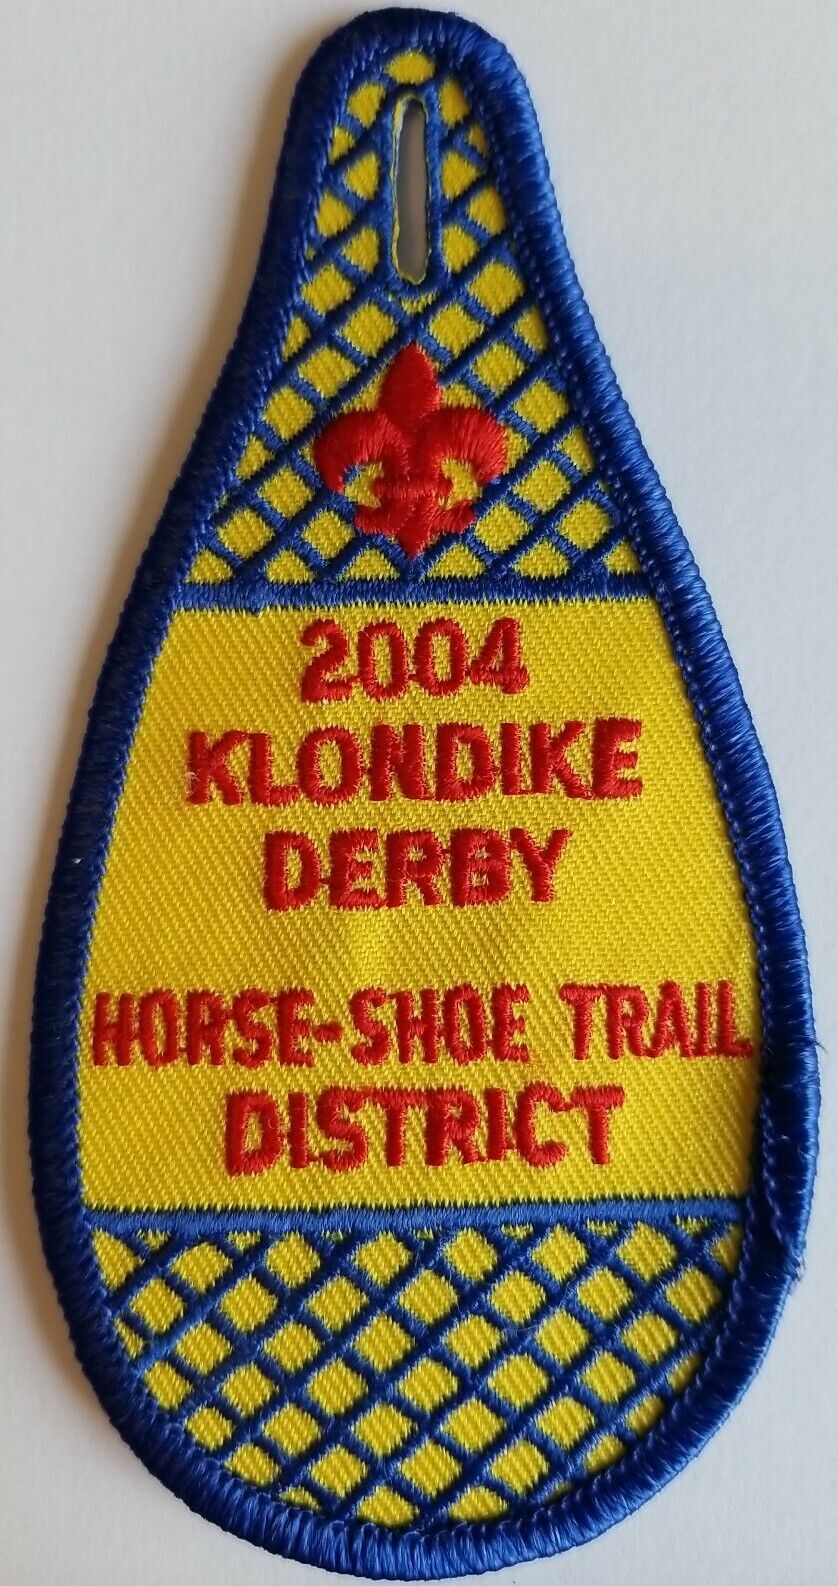 BSA Patch 2004 Klondike Derby Horse Shoe Trail District Scout Button Snowshoe